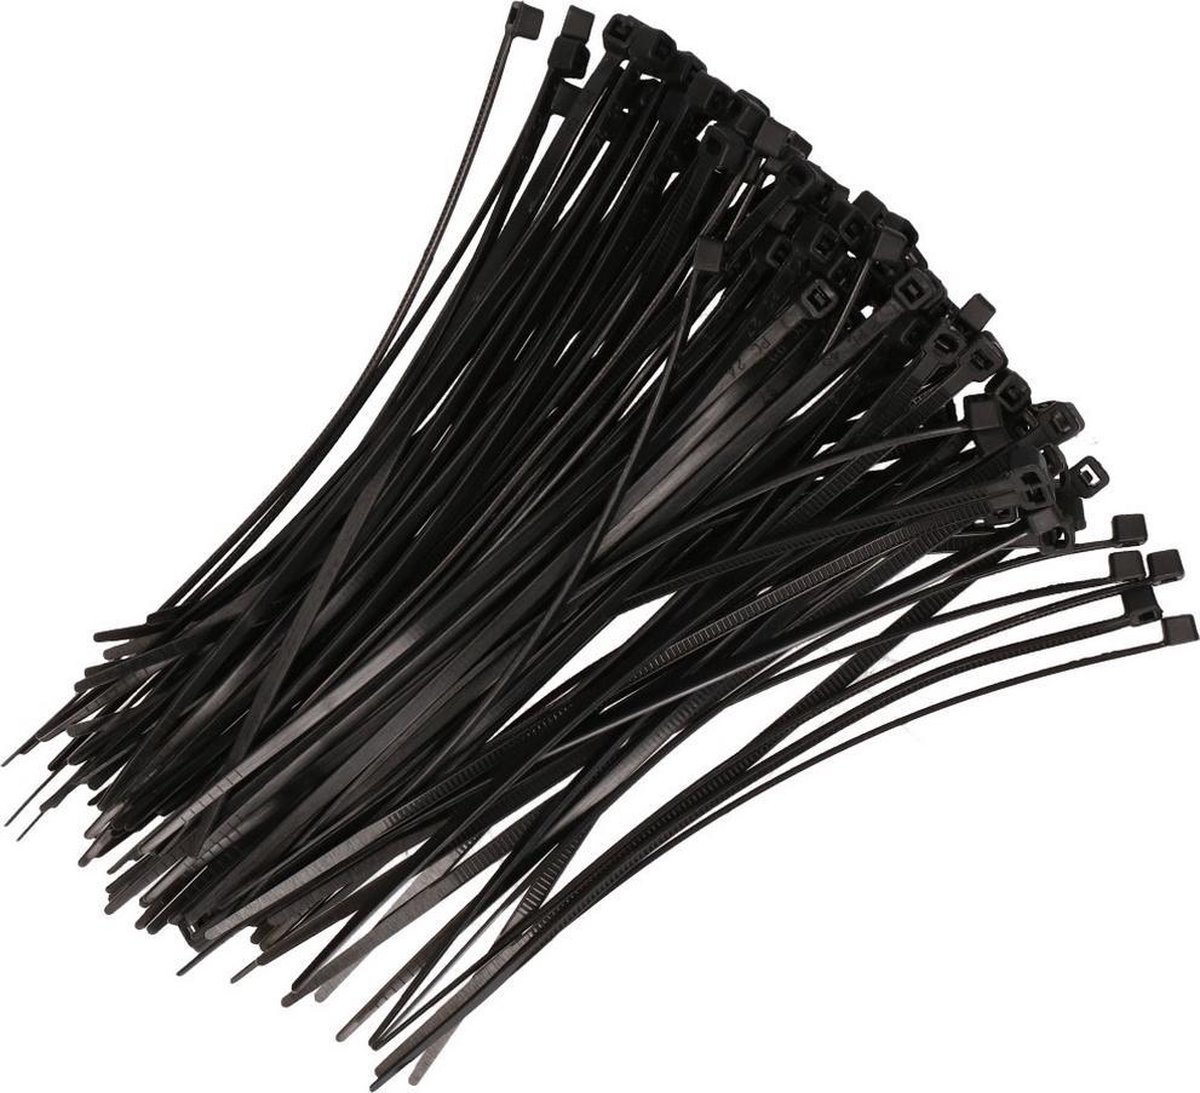 Kabelbinders zwart 200 x 2,5 mm 200 stuks - Fiets/tuin/hobby gereedschap